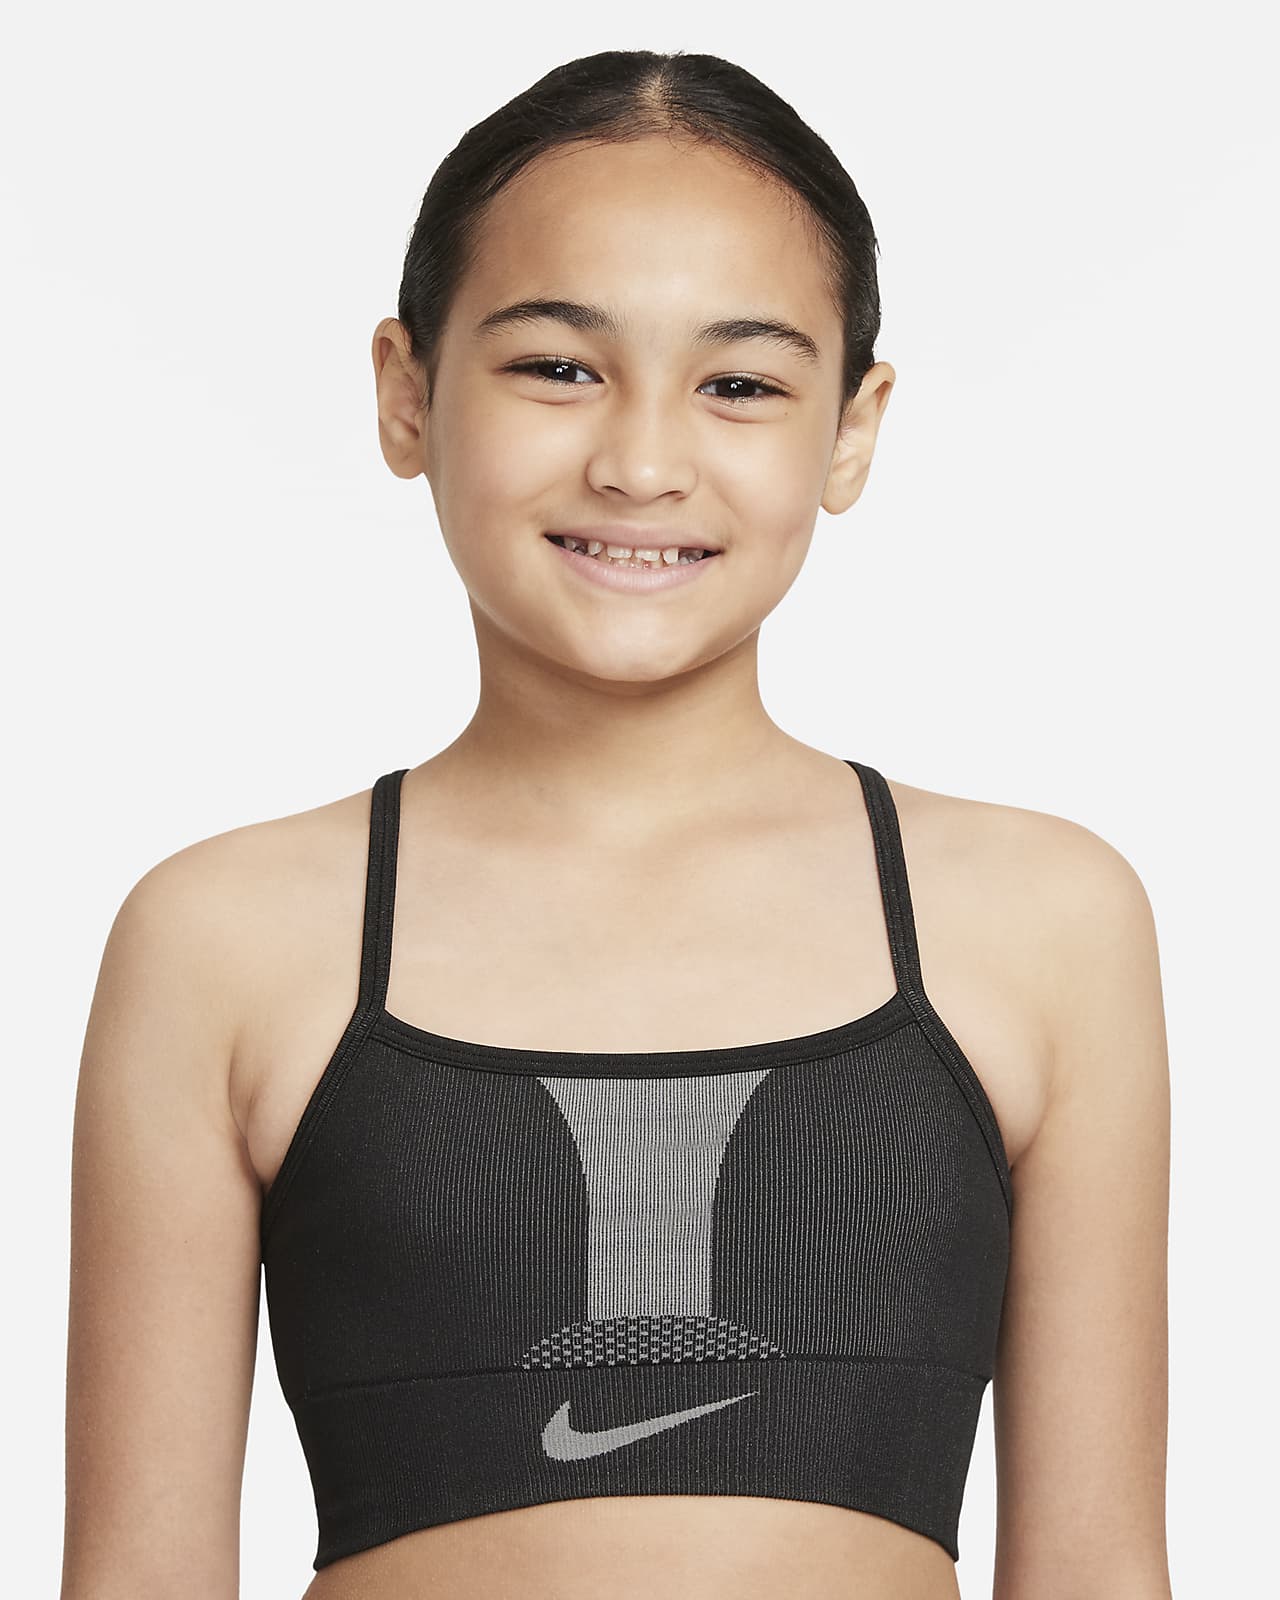 สปอร์ตบราเด็กโต Nike Dri-FIT Indy (หญิง)